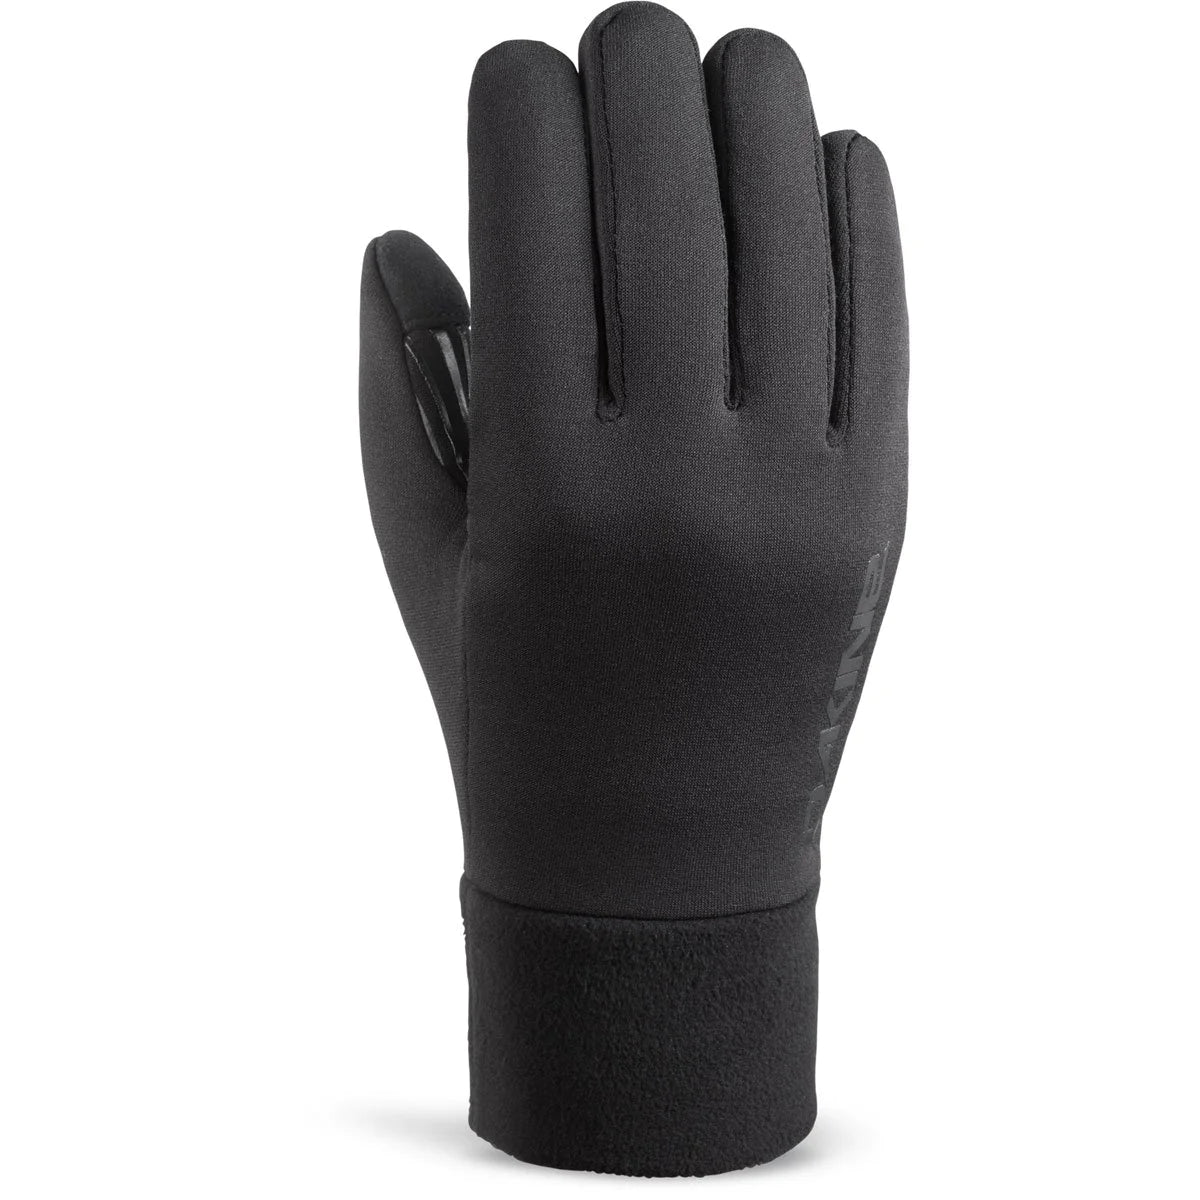 Storm Liner Glove - Black